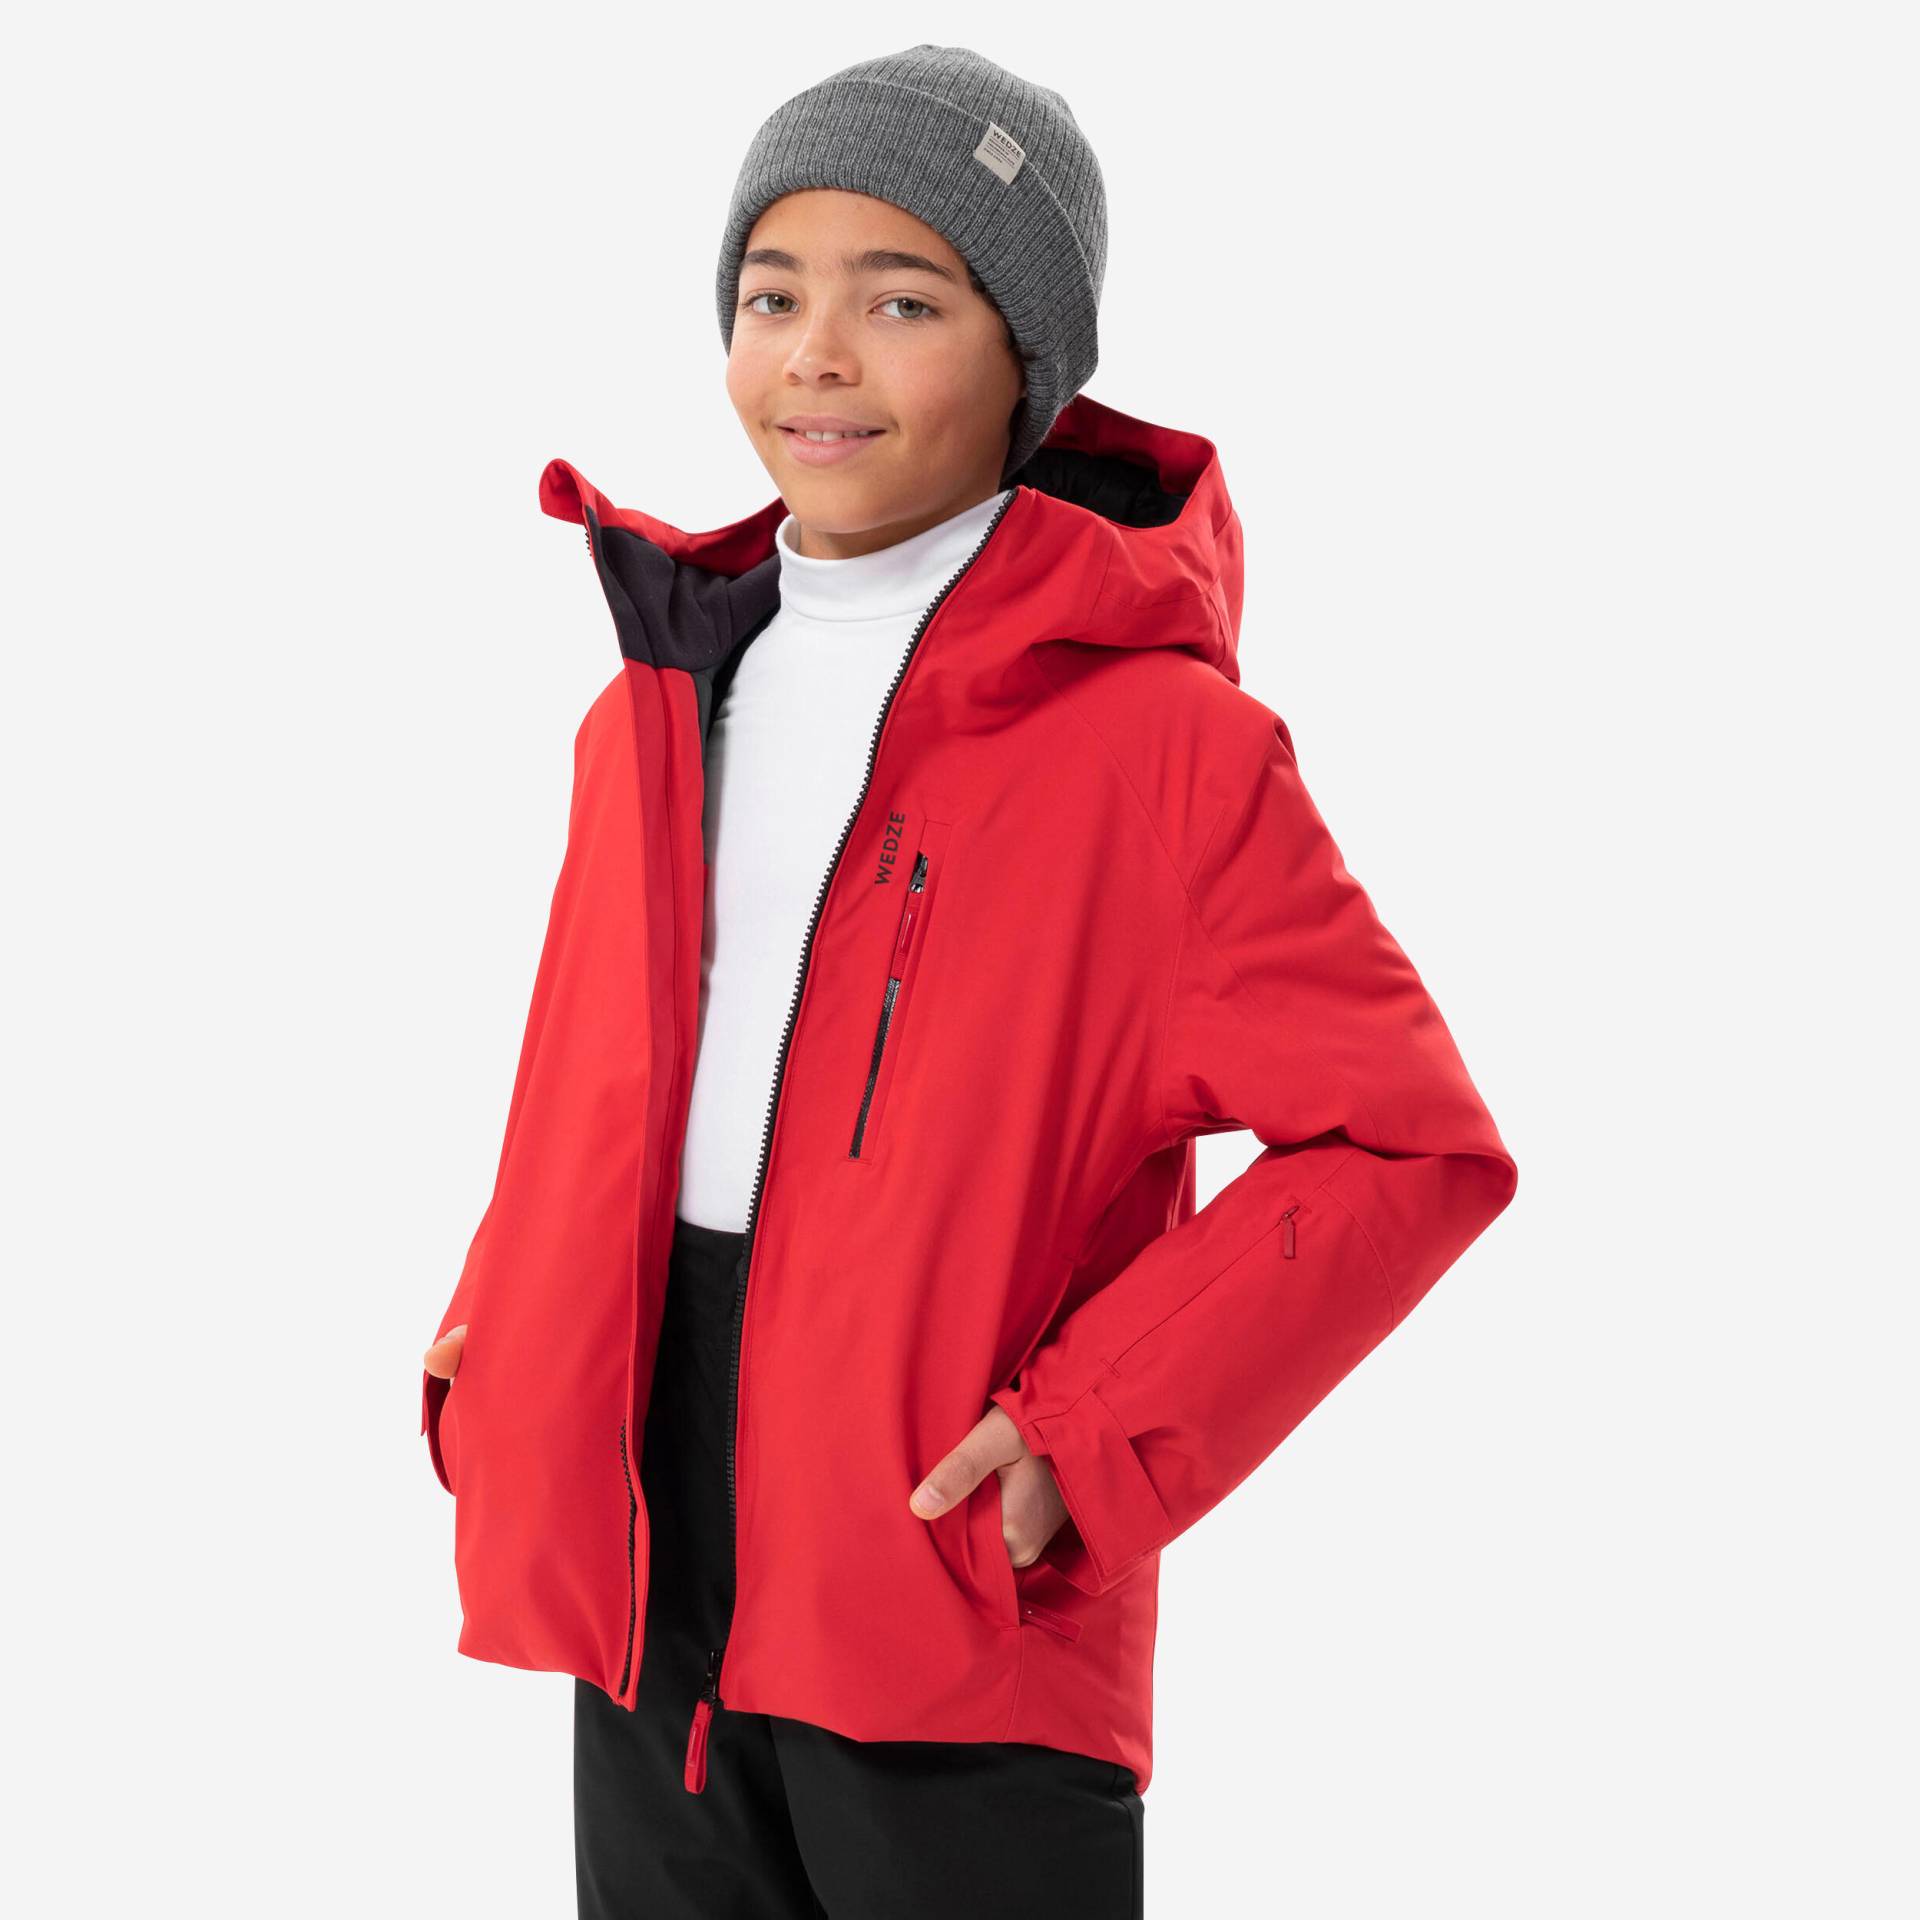 Skijacke Kinder warm wasserdicht - 550 rot von WEDZE